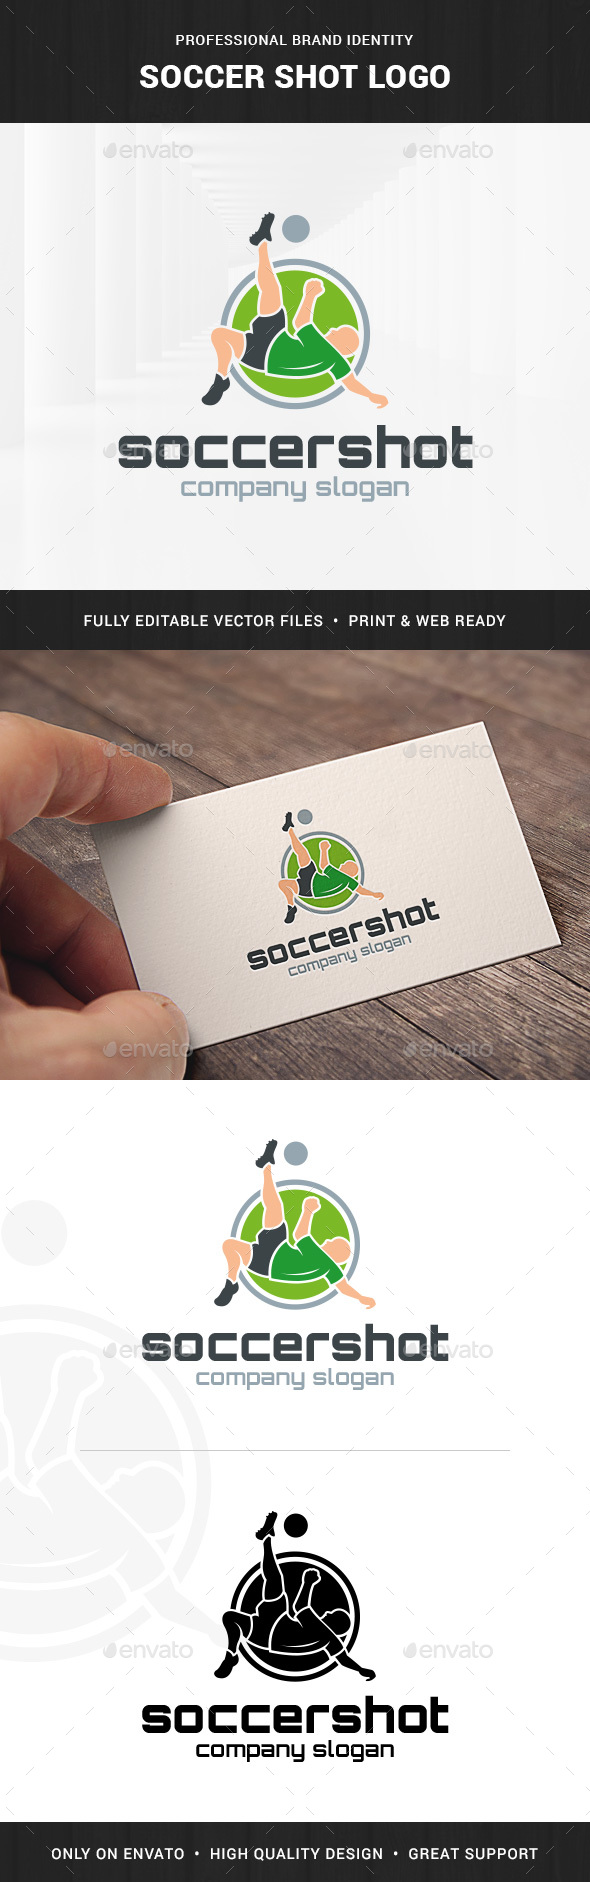 Soccer Shot Logo Template